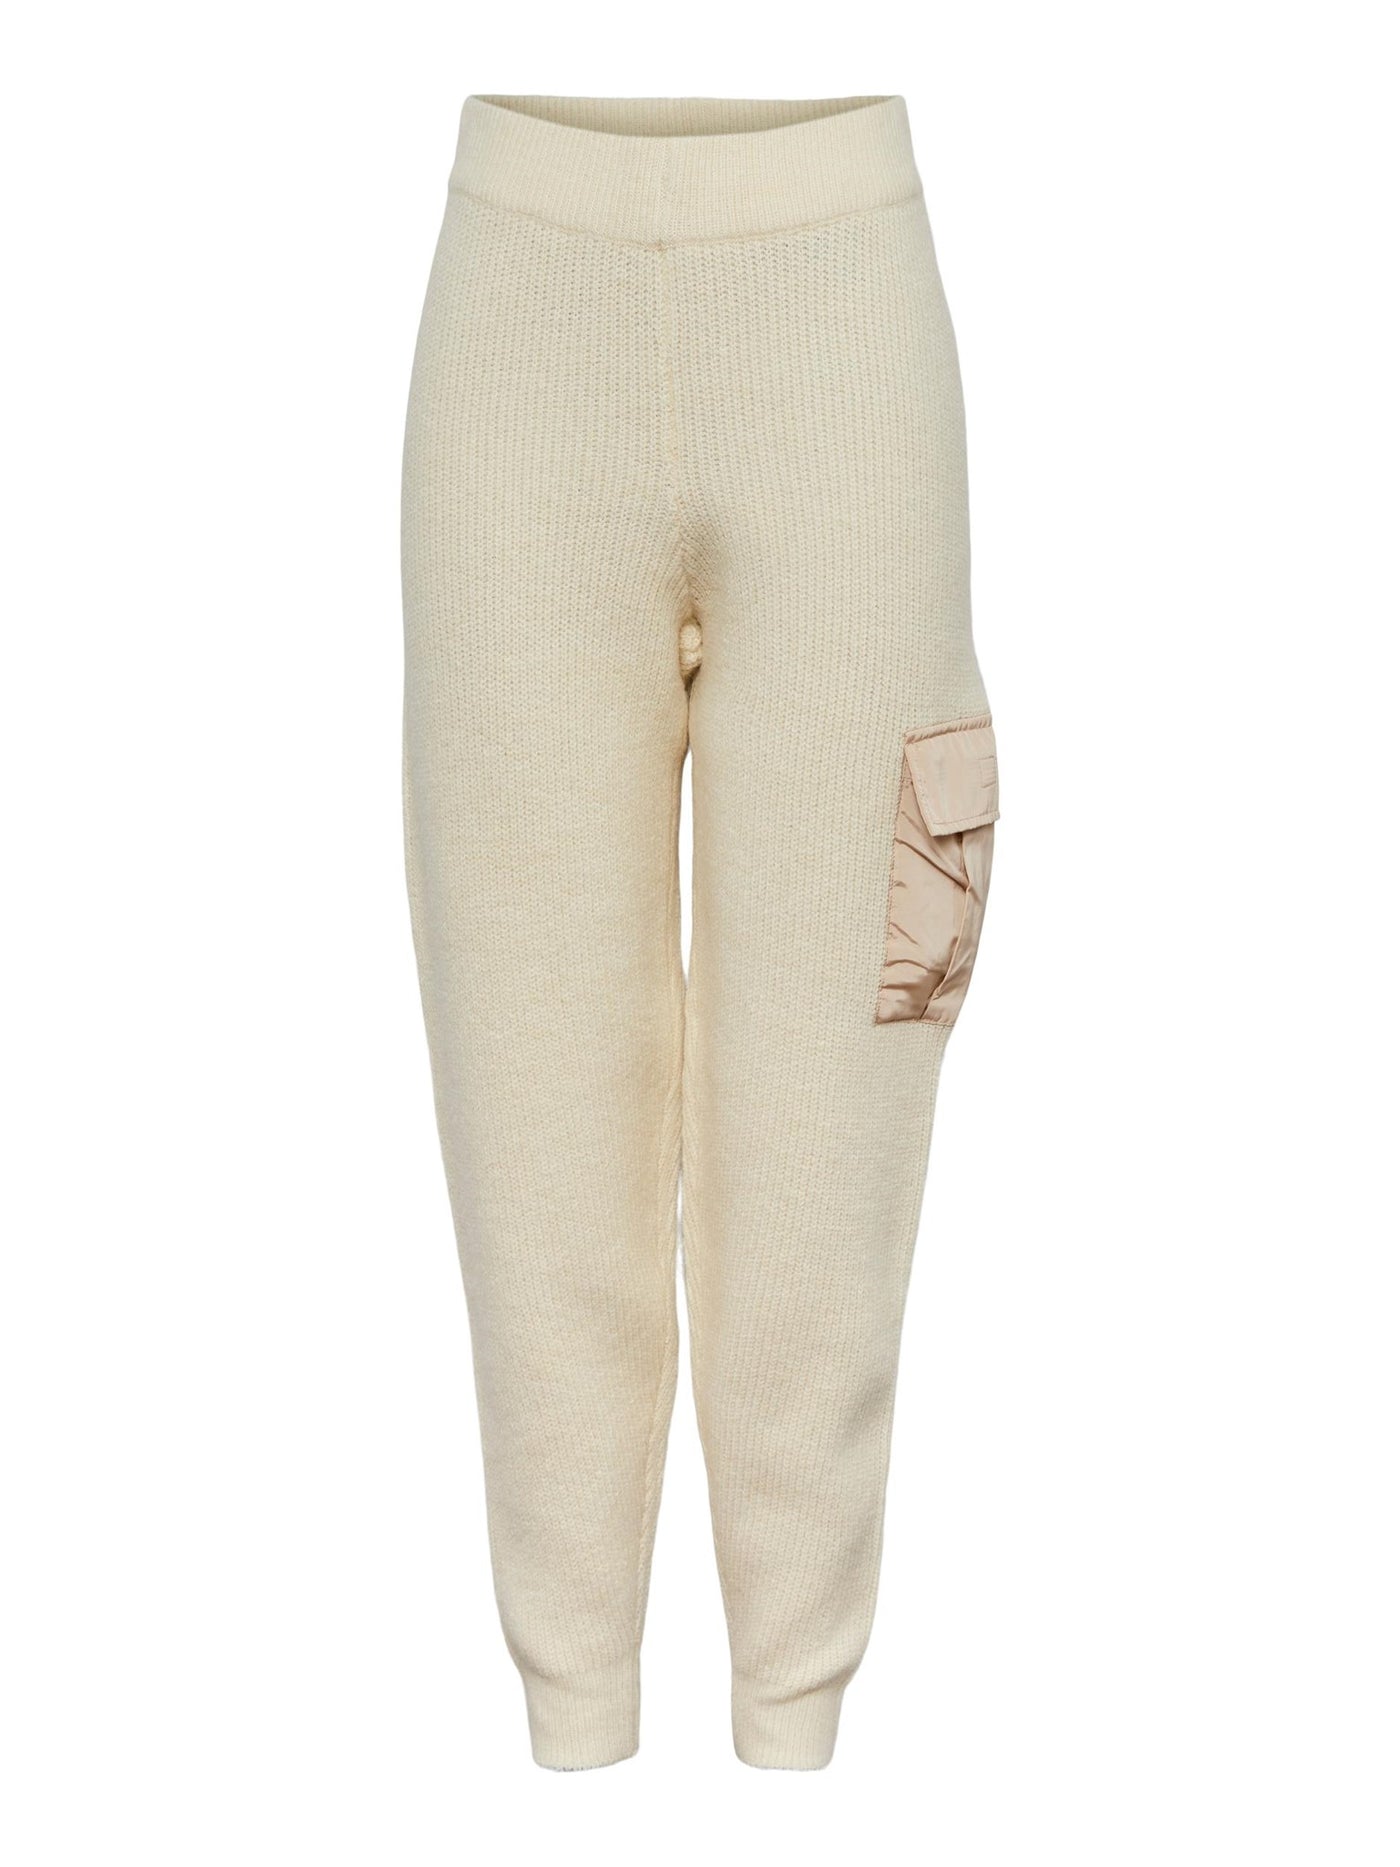 Naura Knit Pants - Antique White - PIECES